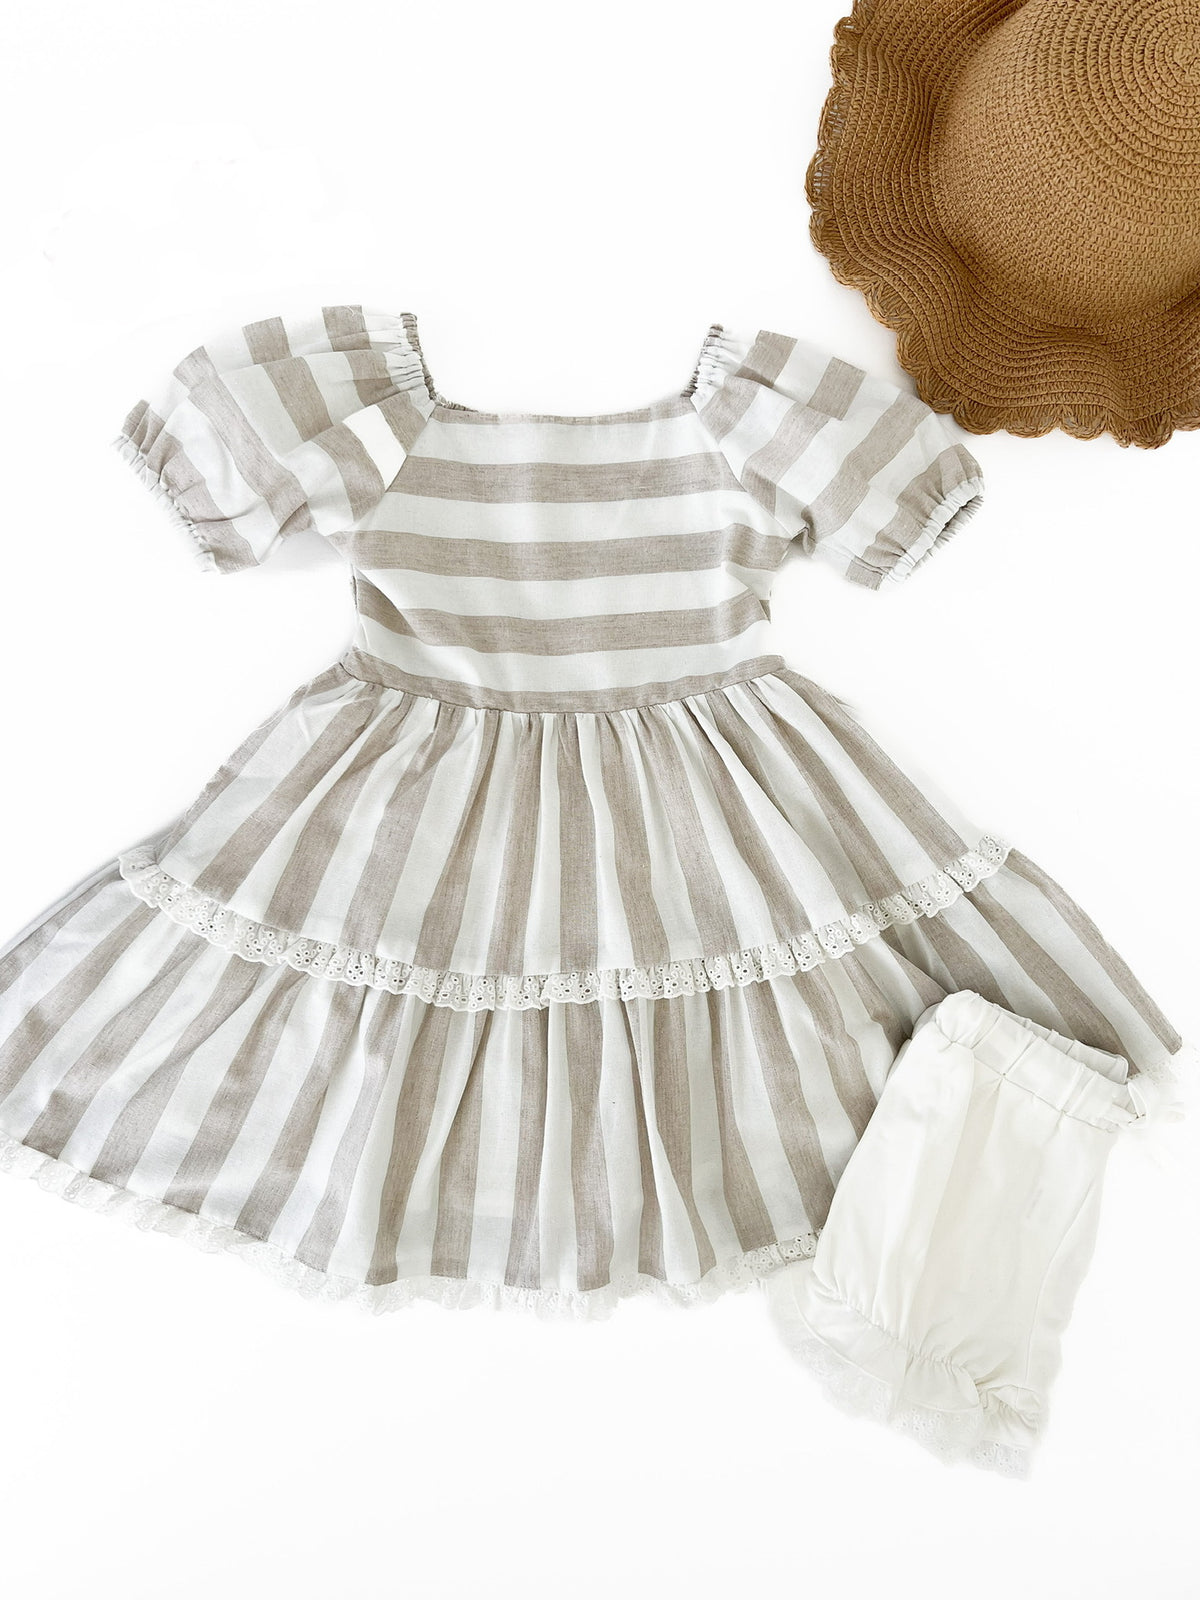 Wheat Stripe Grace Dress and Bloomer Set